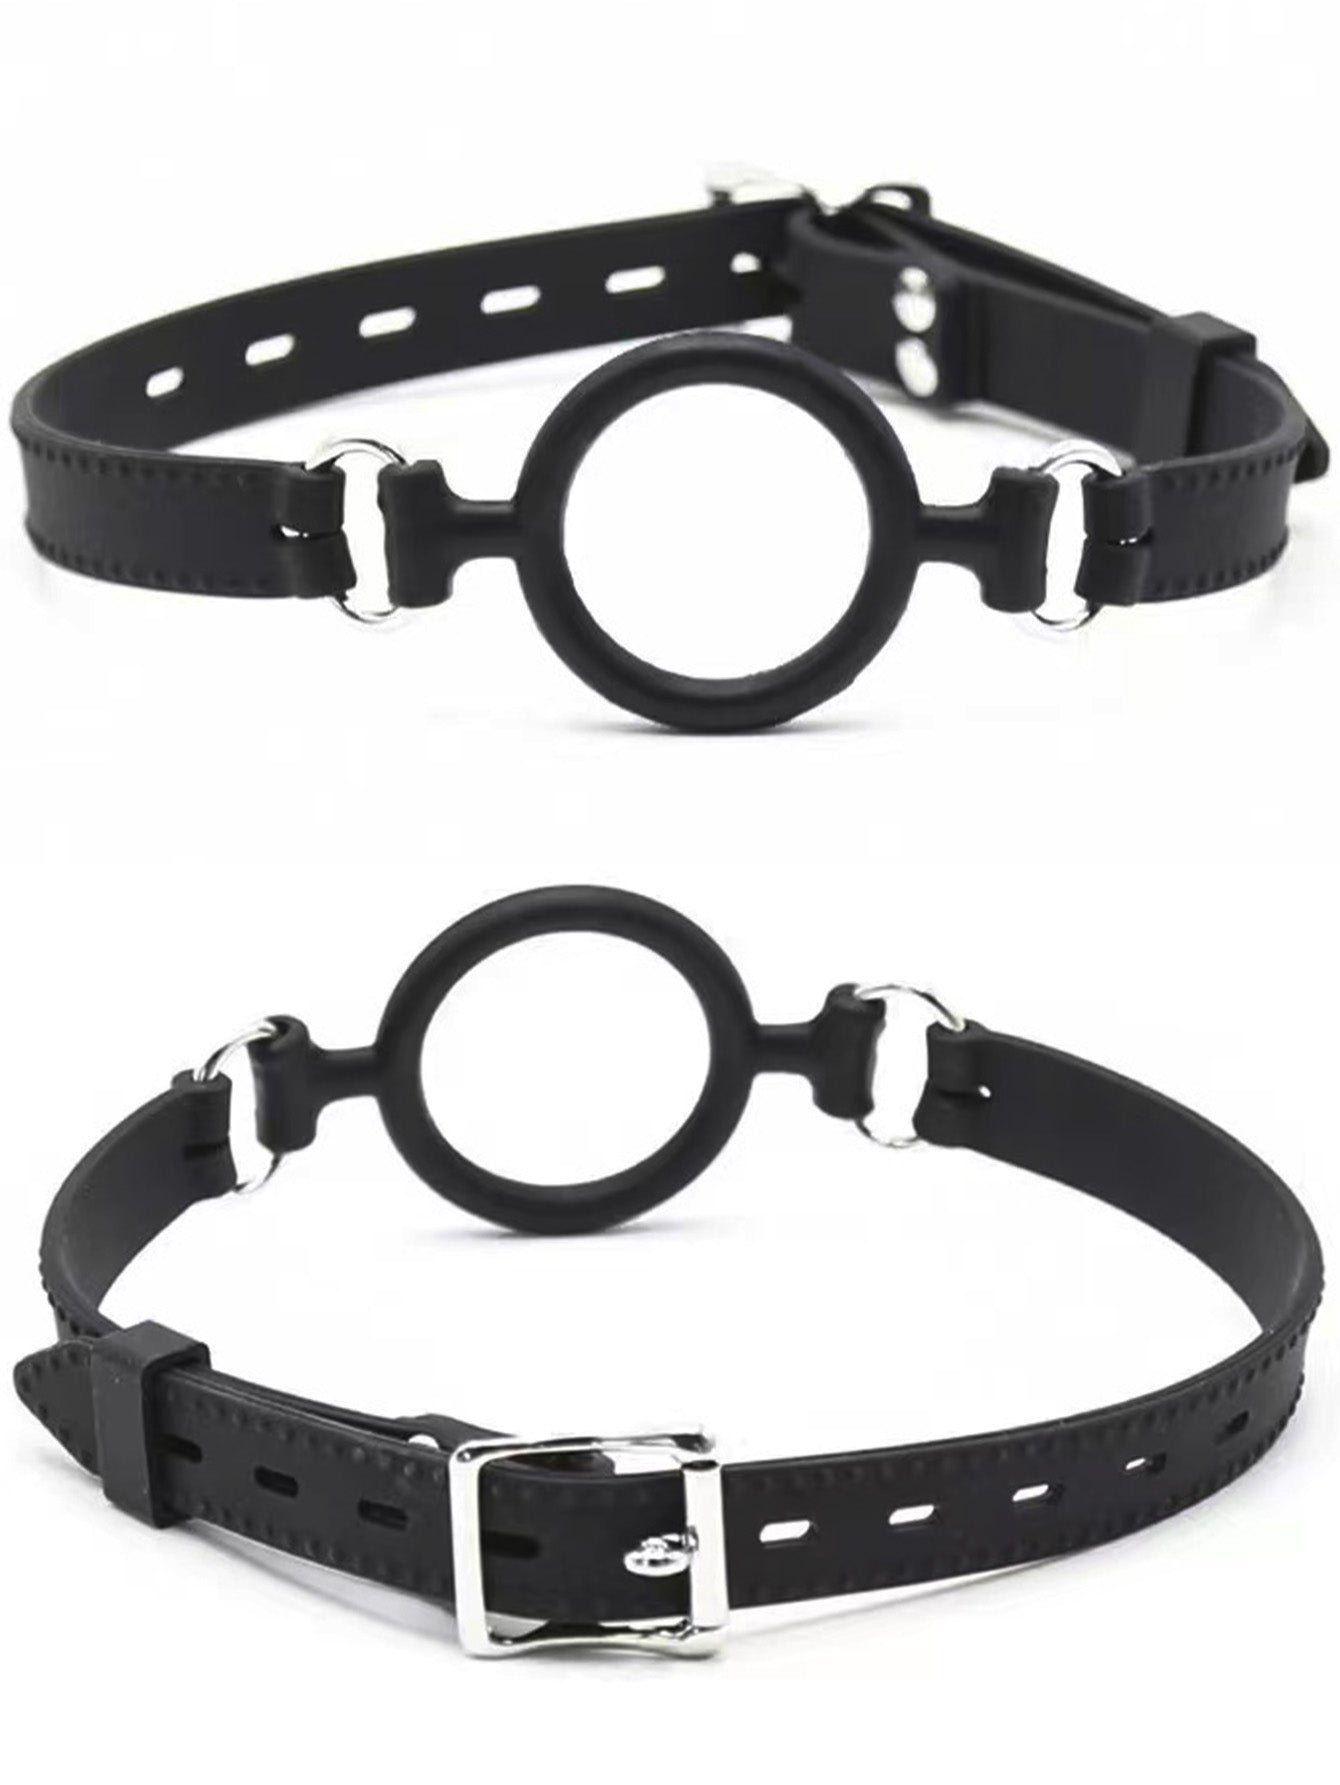 Silikonringknebel BDSM-Spielzeug - Bondage-Fesseln, einstellbare Größe